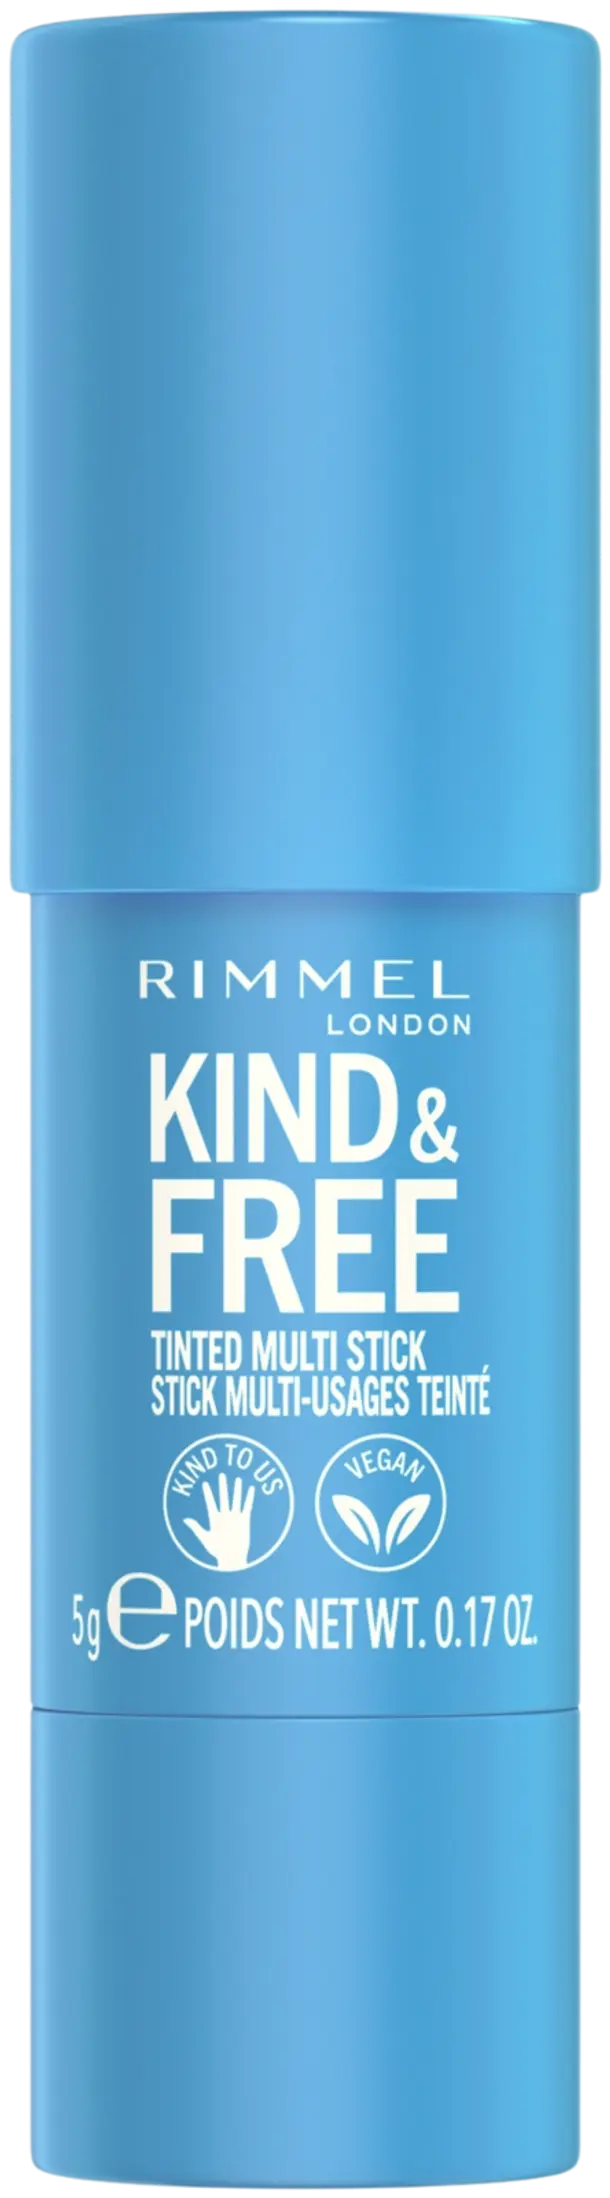 Rimmel Kind & Free Multi Stick 5 g 001 Caramel Dusk poskipuna